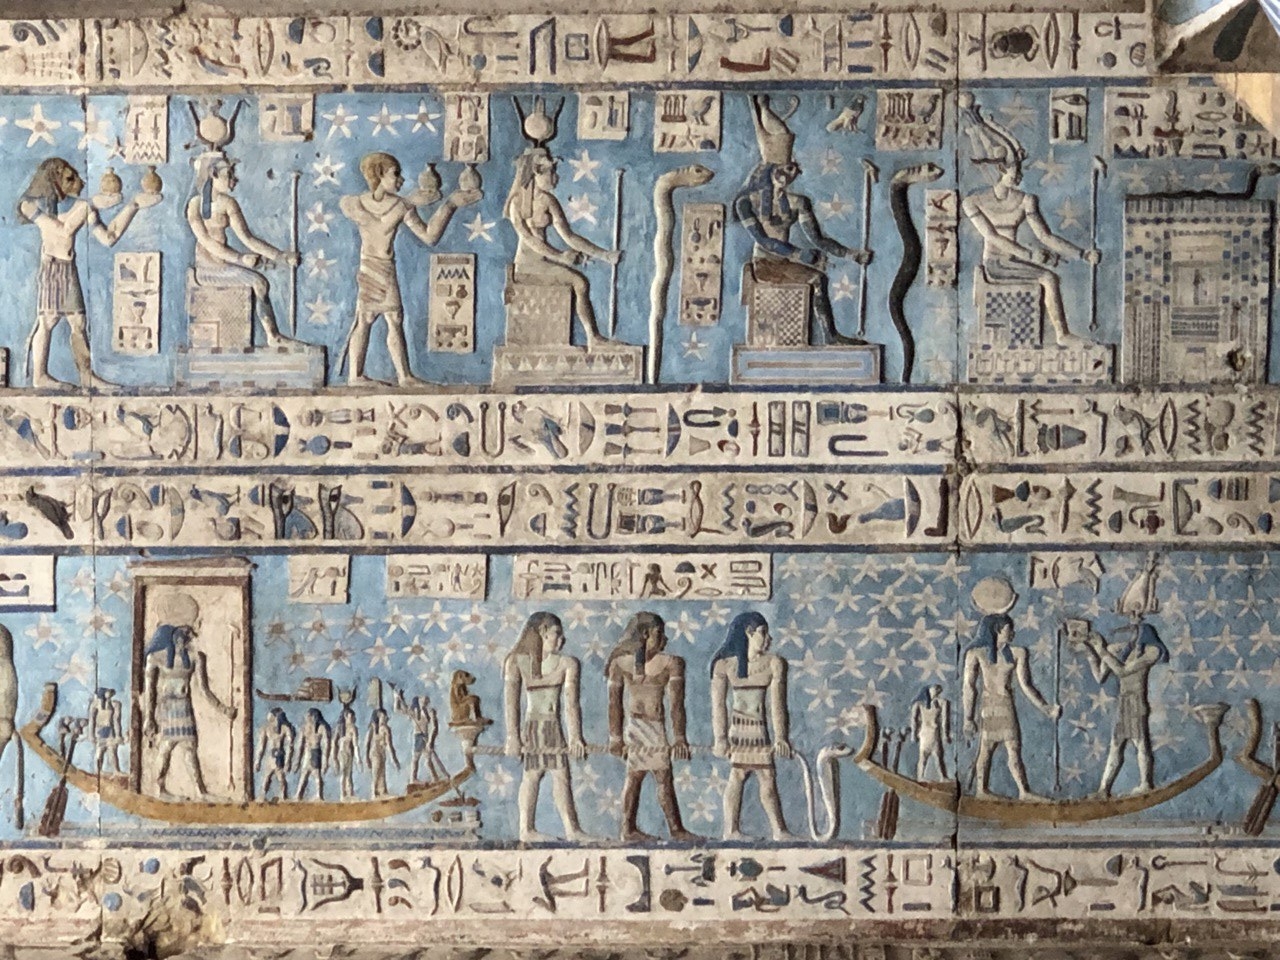 Geroglifici su un soffitto del tempio di Abydos, Egitto